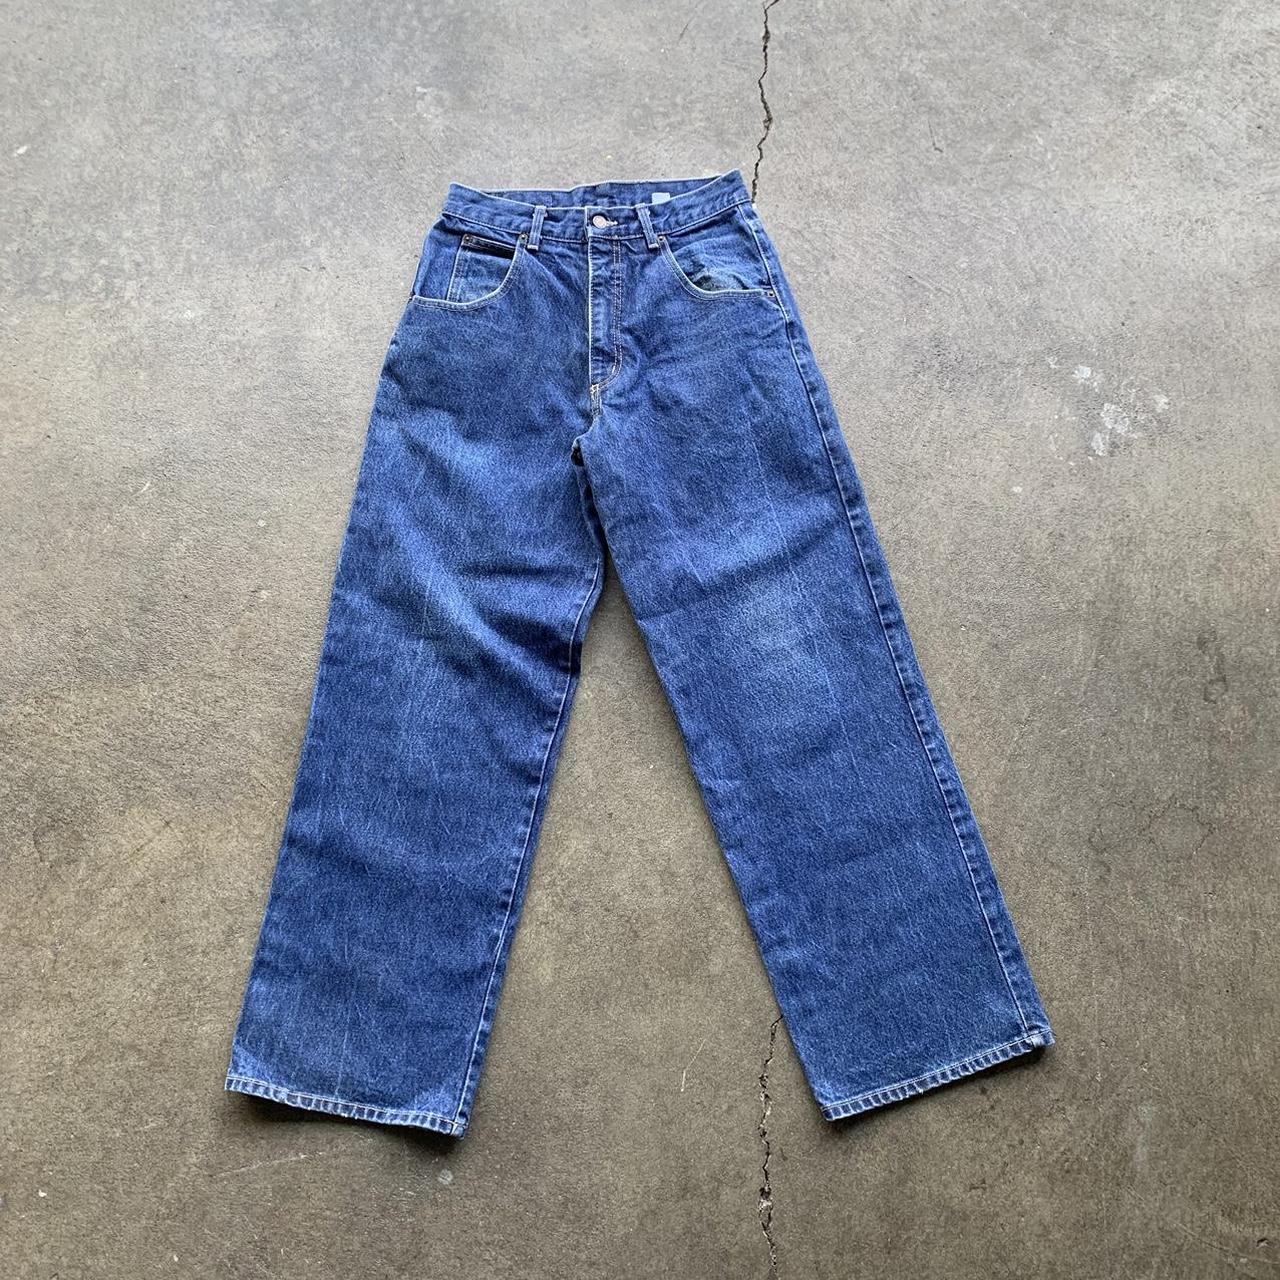 Vintage Solo Semore Jeans Measurements: 30... - Depop